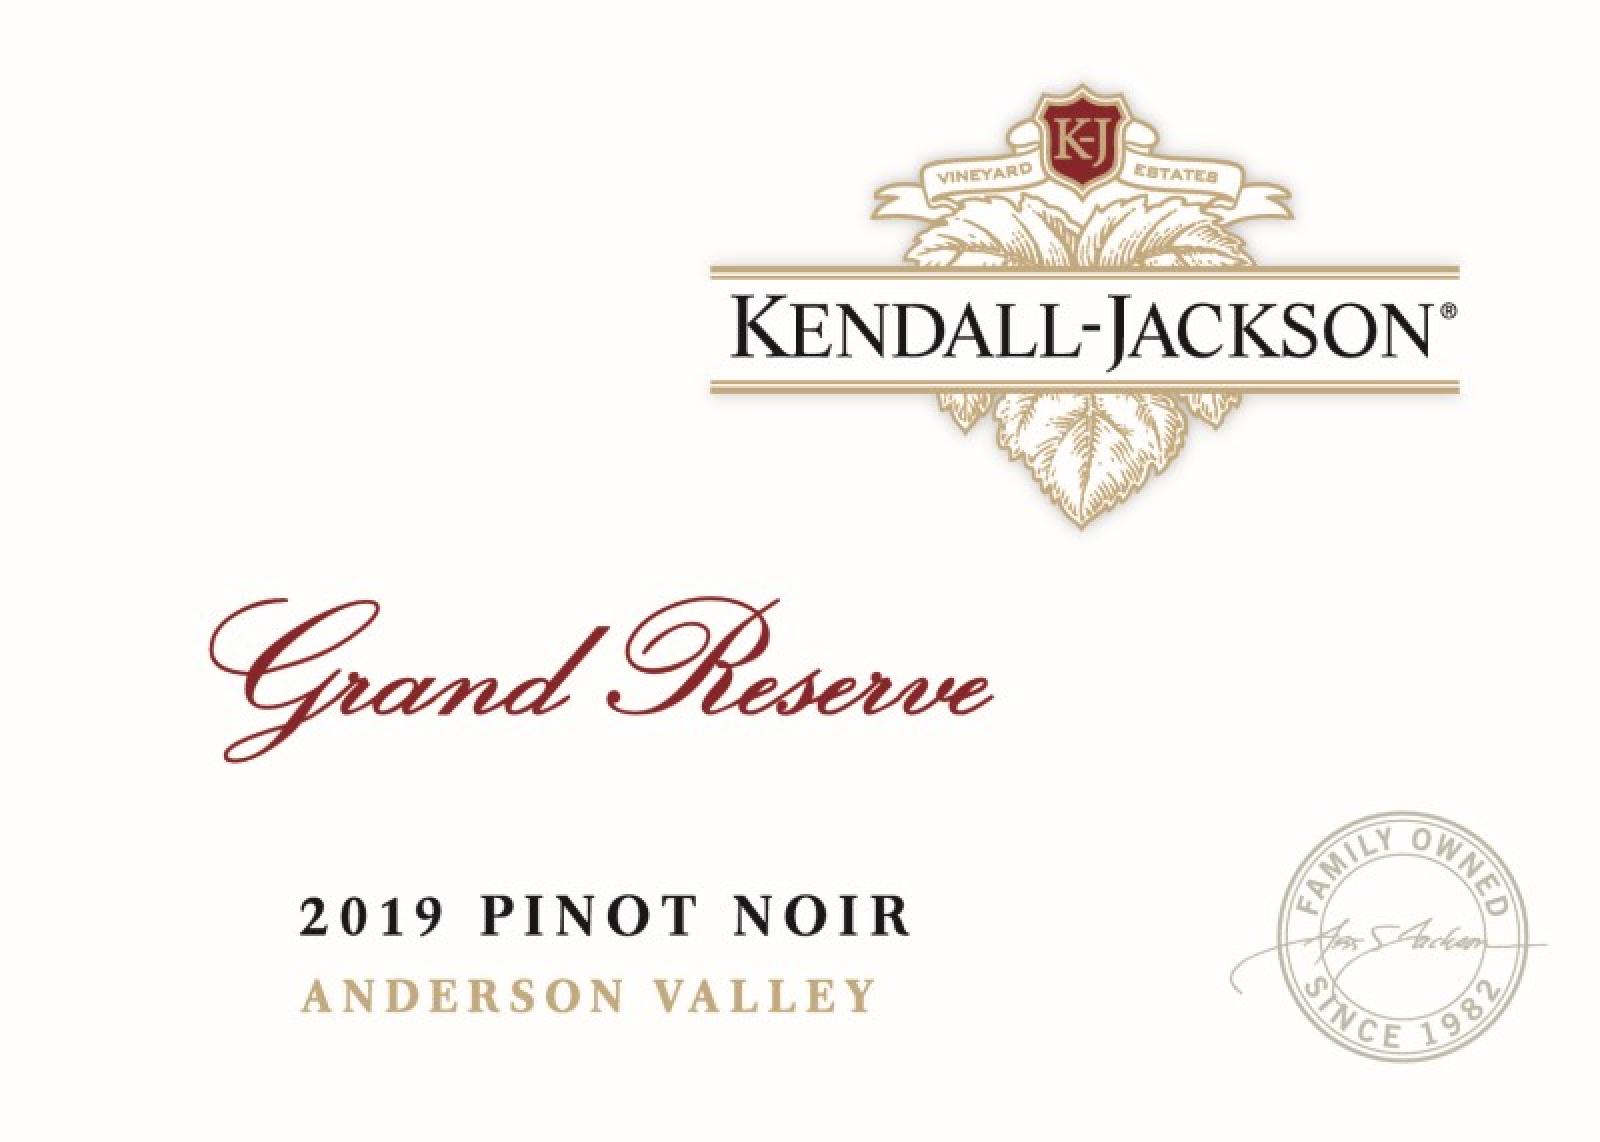 Kendall Jackson Grand Reserve Pinot Noir 2019